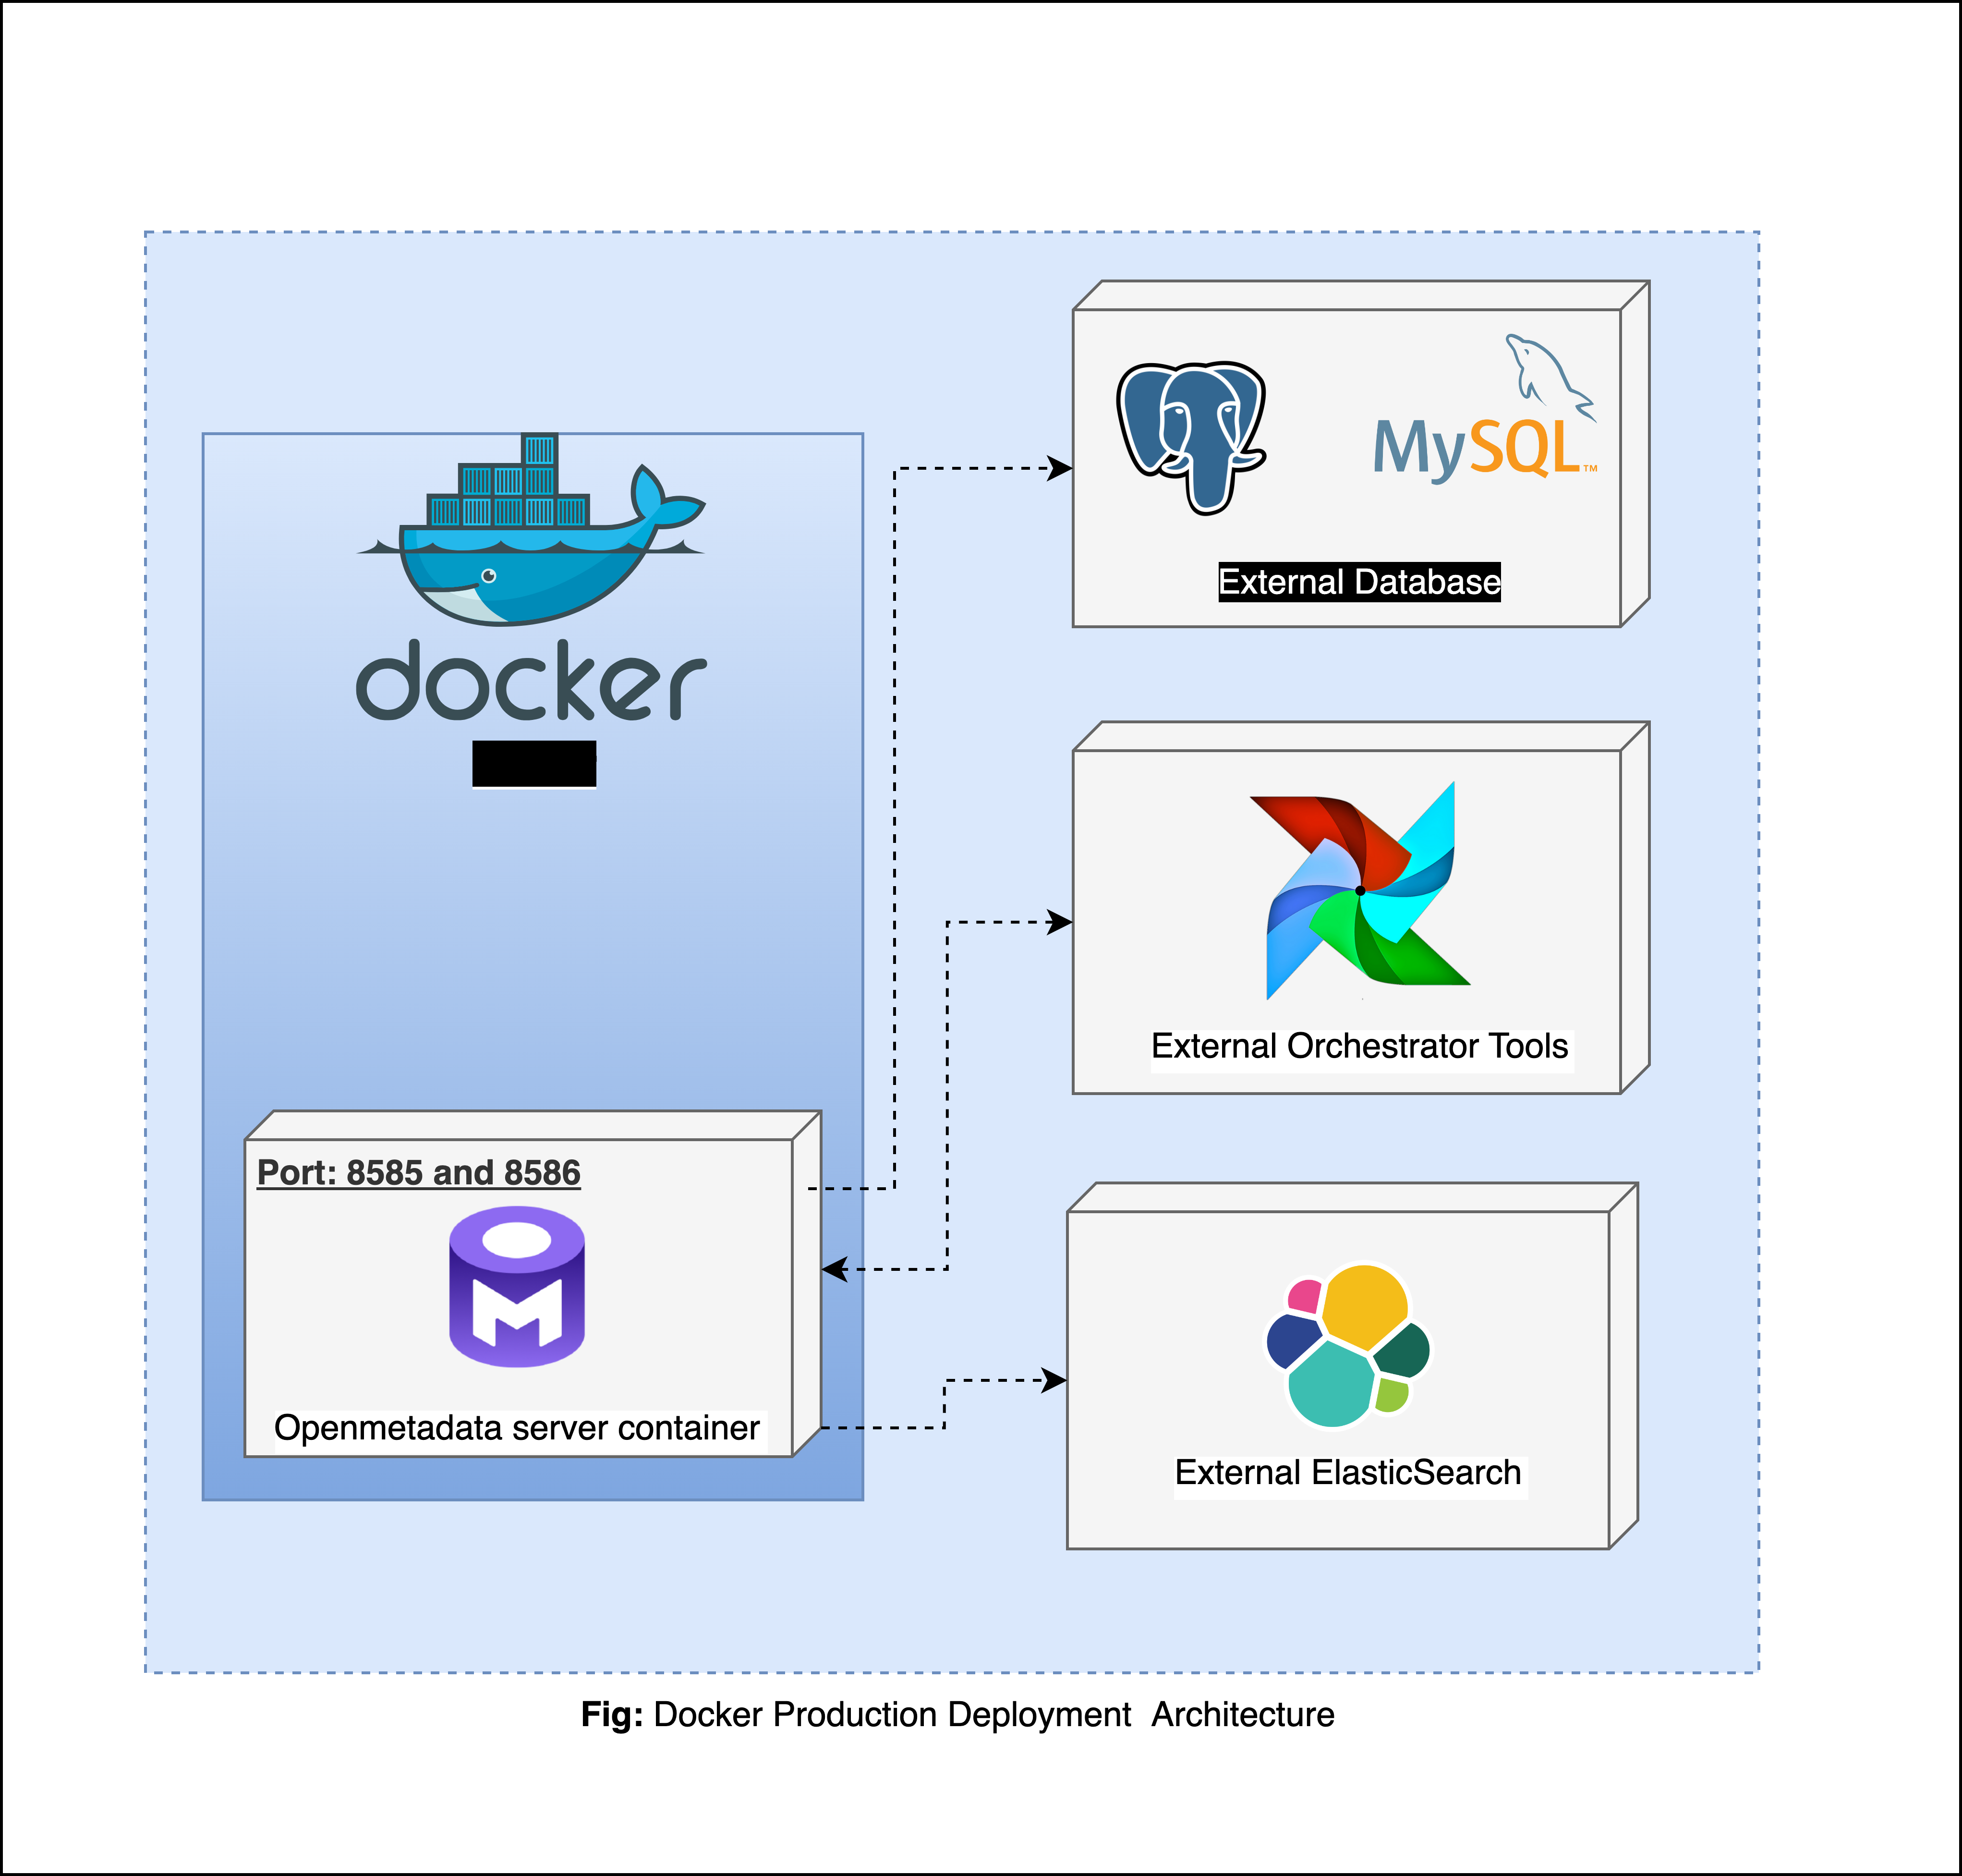 Docker Deployment Architecture